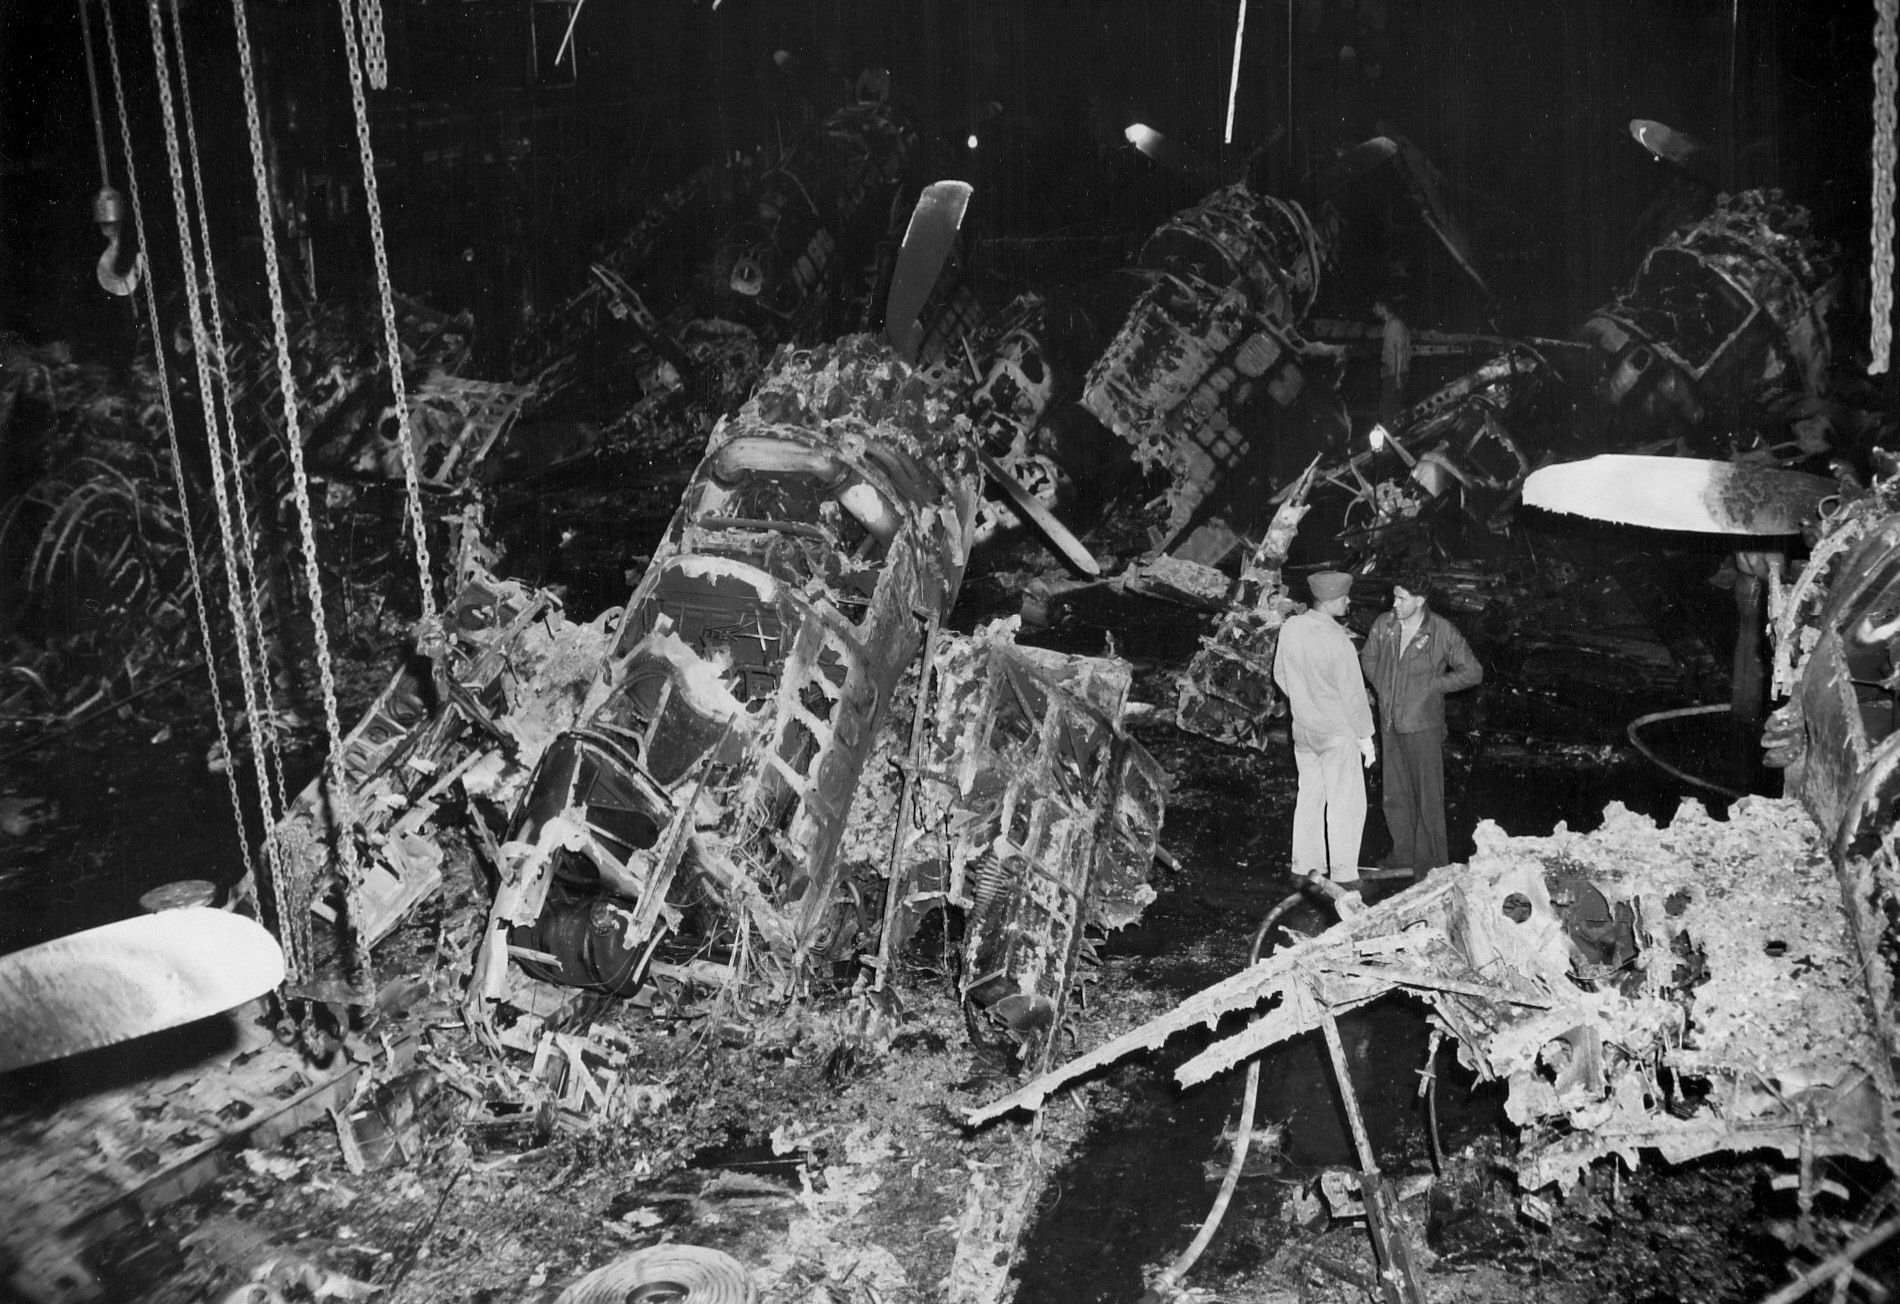 cva-19 uss hancock cv essex class aircraft carrier 119 kamikaze aircraft attack hit wwii 1945